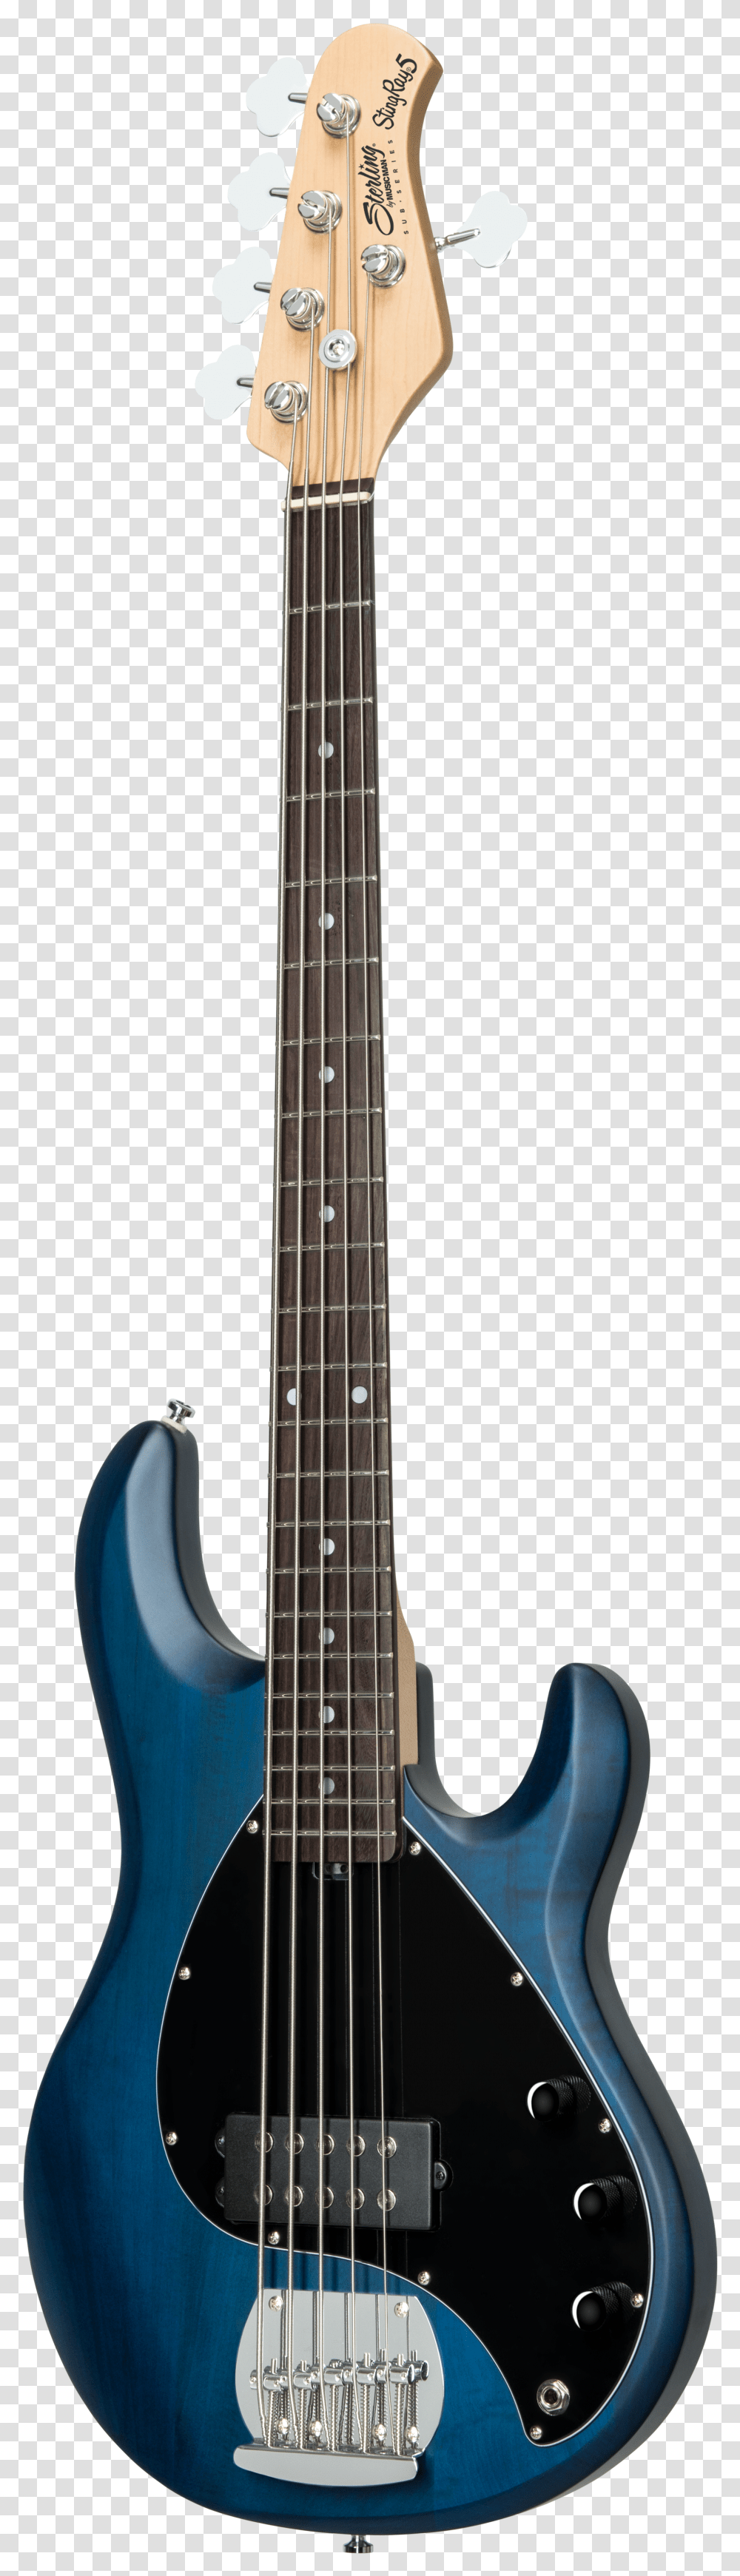 Bass Guitar Transparent Png